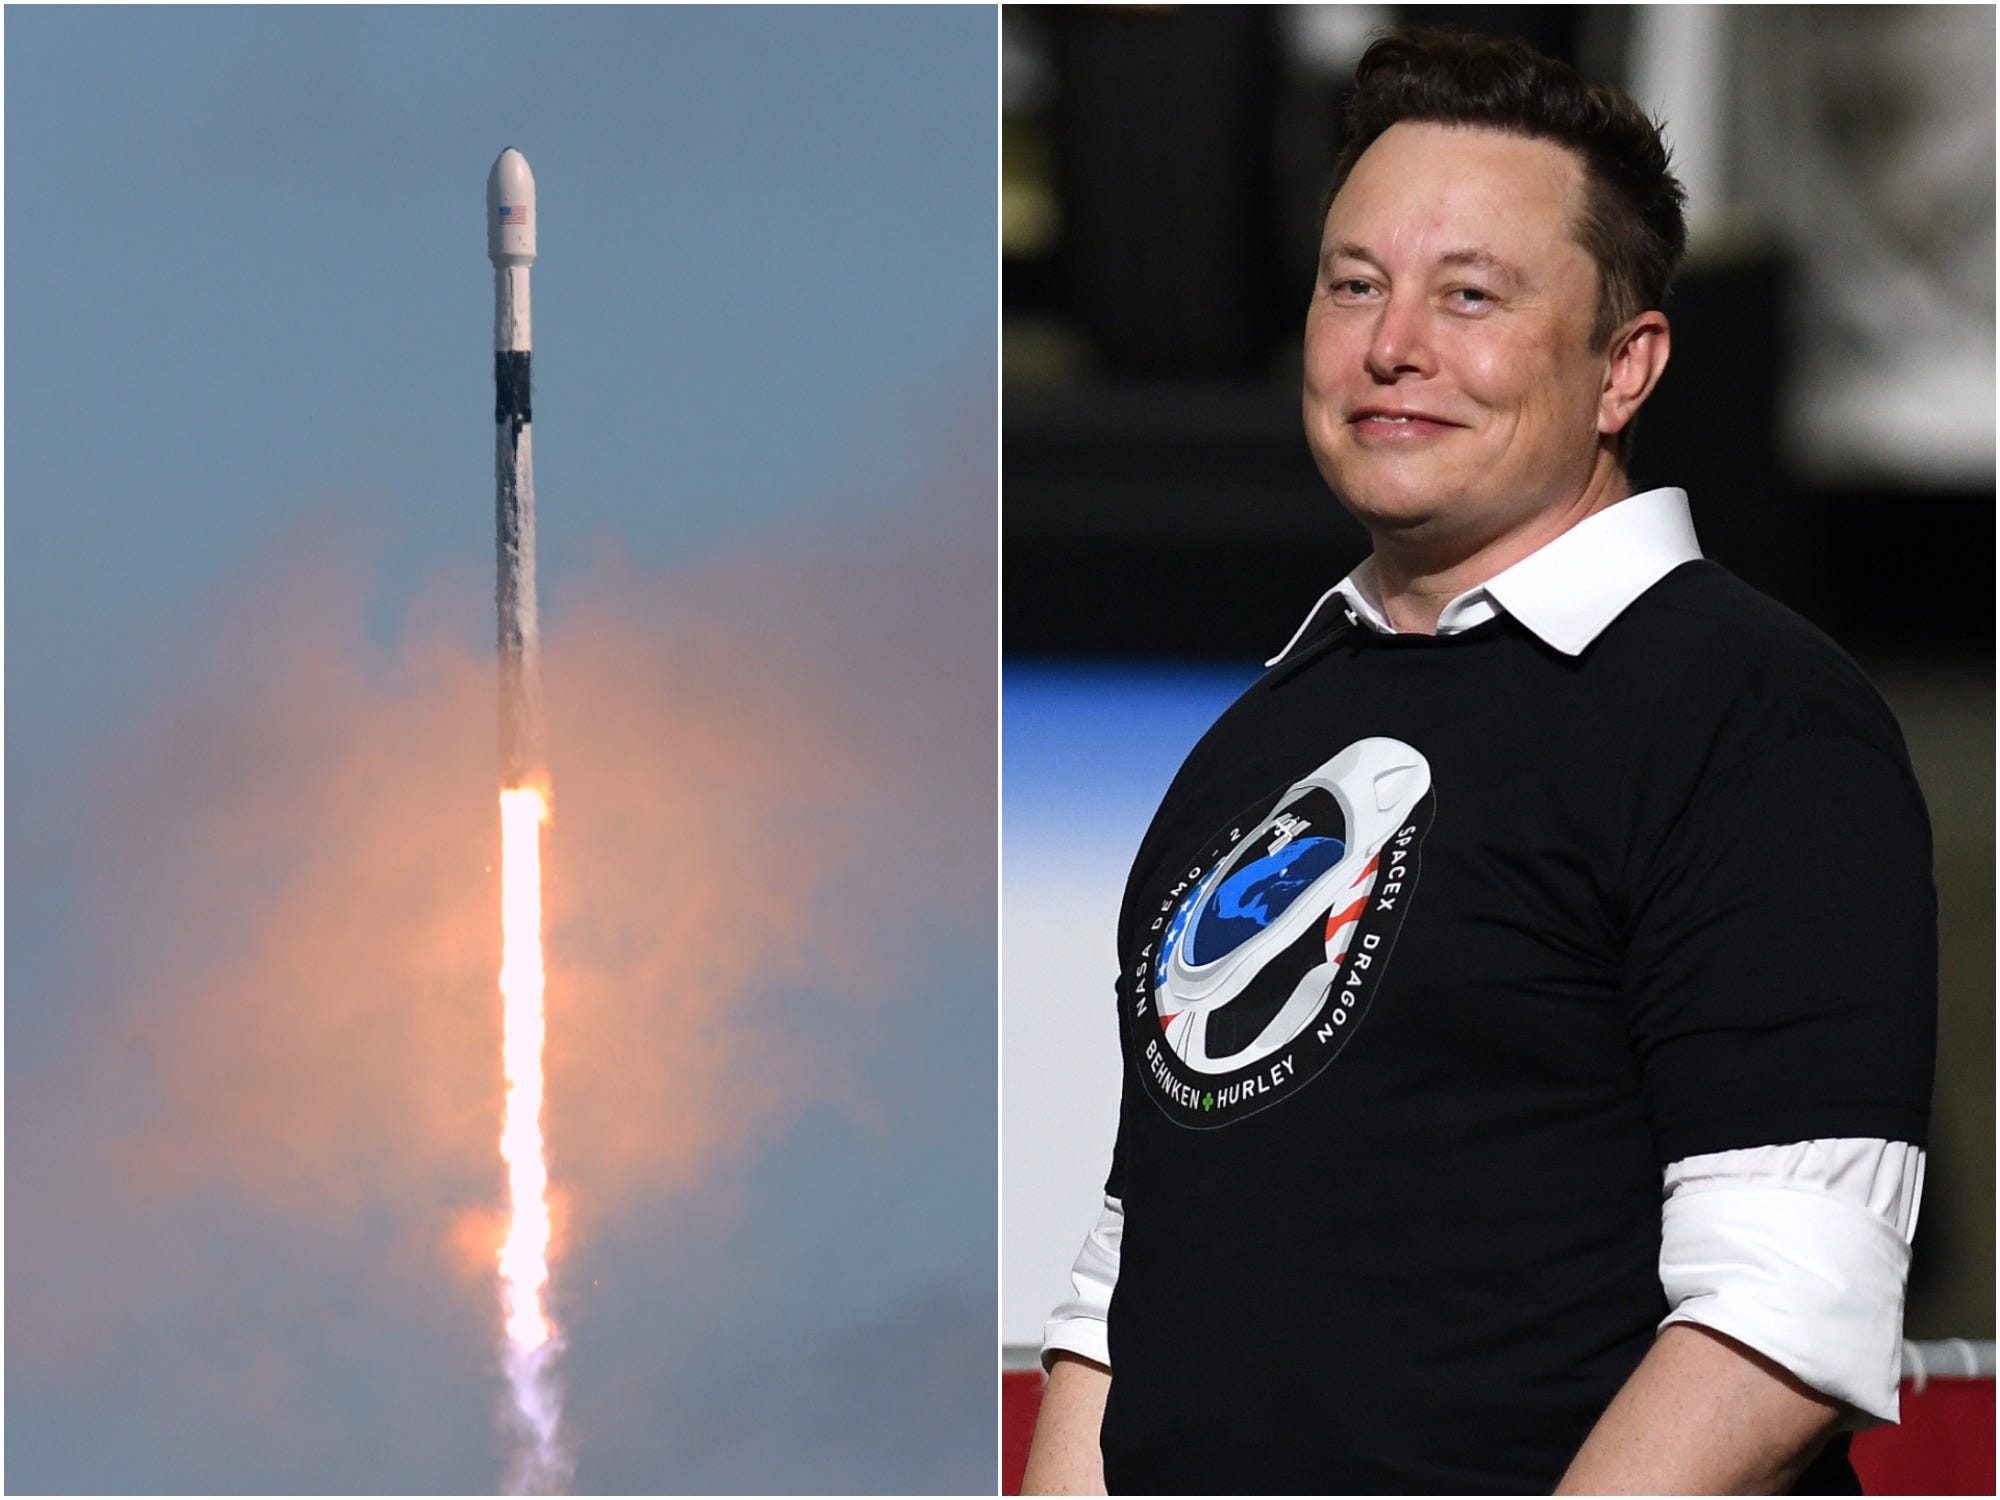 SpaceX's Falcon 9 rocket alongside CEO Elon Musk